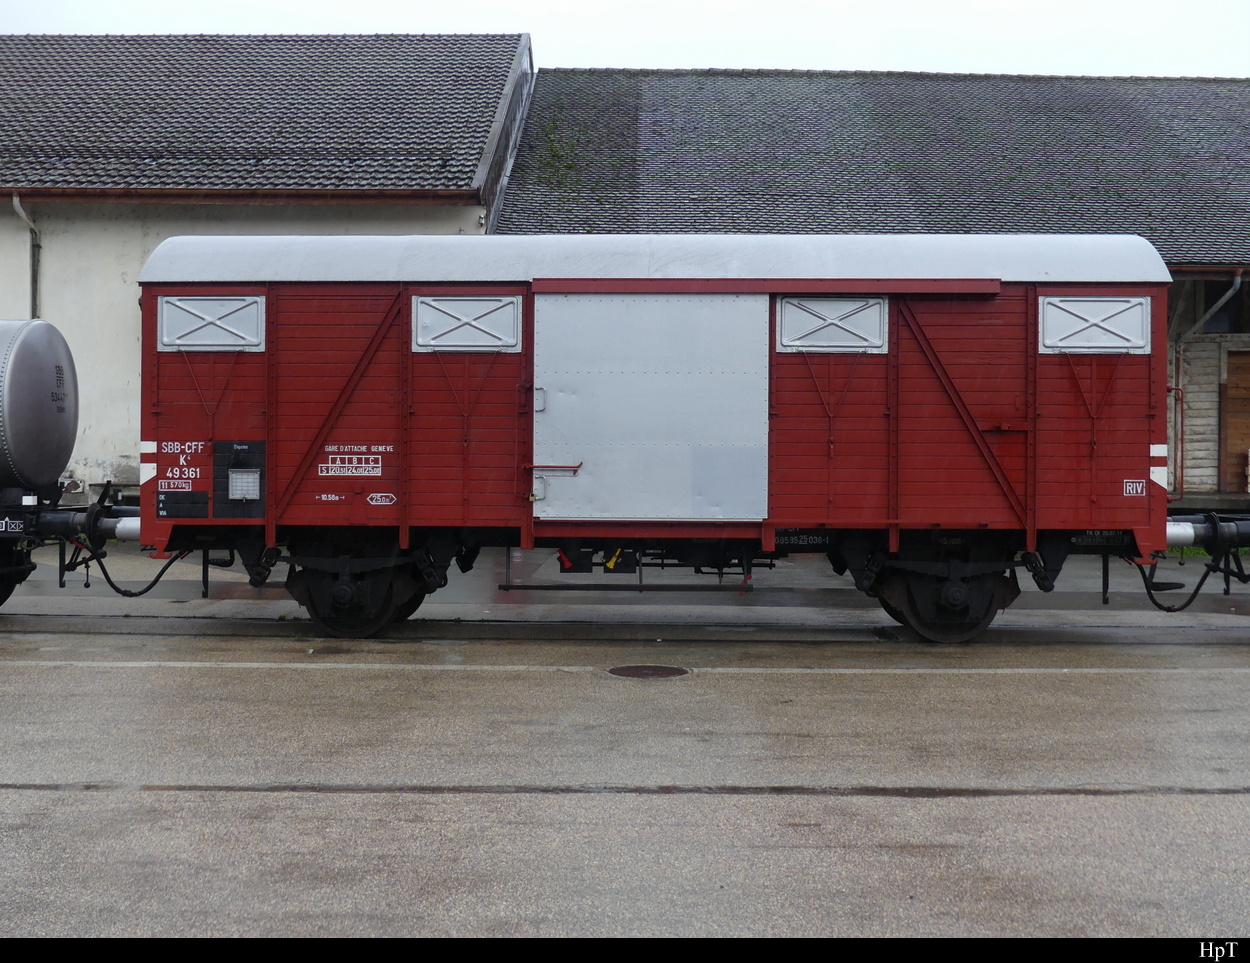 SBB - Historischer Güterwagen K  49361 ( X 40 85 95 25 036-1 ) ausgestellt im Areal der SBB Werksätte in Yverdon anlässlich der Feier 175 Jahre Bahnen am 02.10.2022